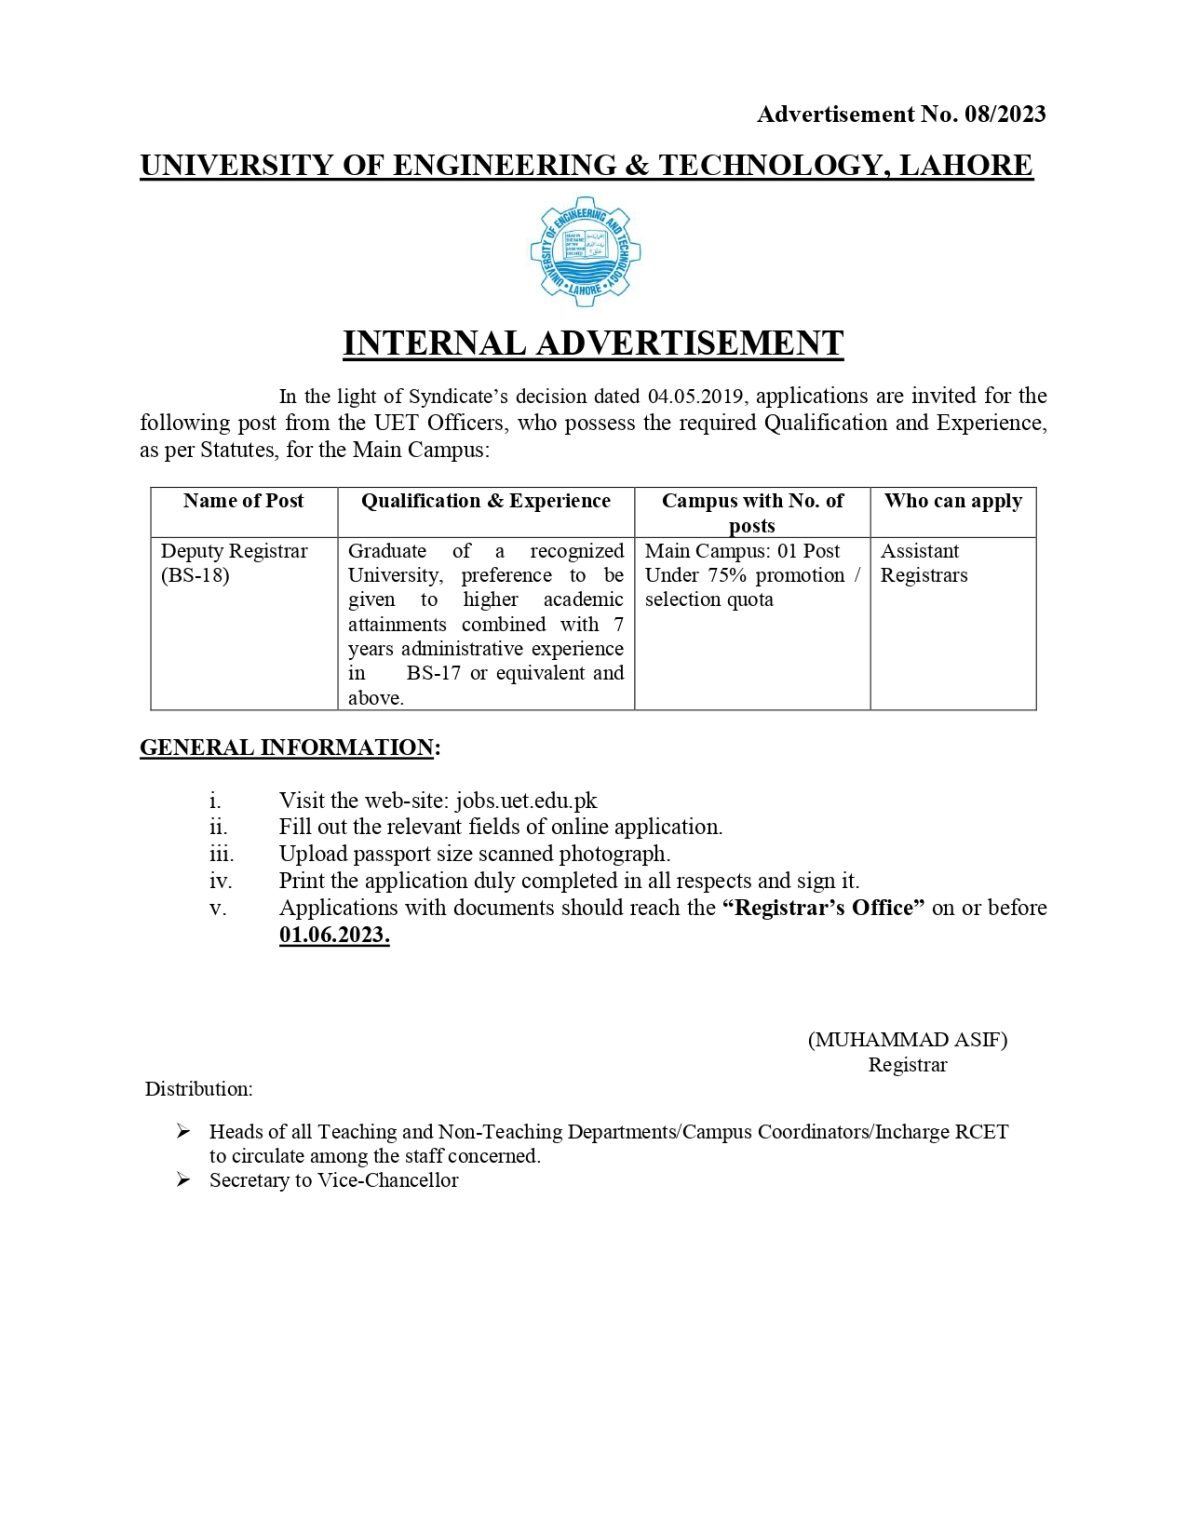 UET Lahore Jobs 2023 - Apply Online at www.ue.edu.pk